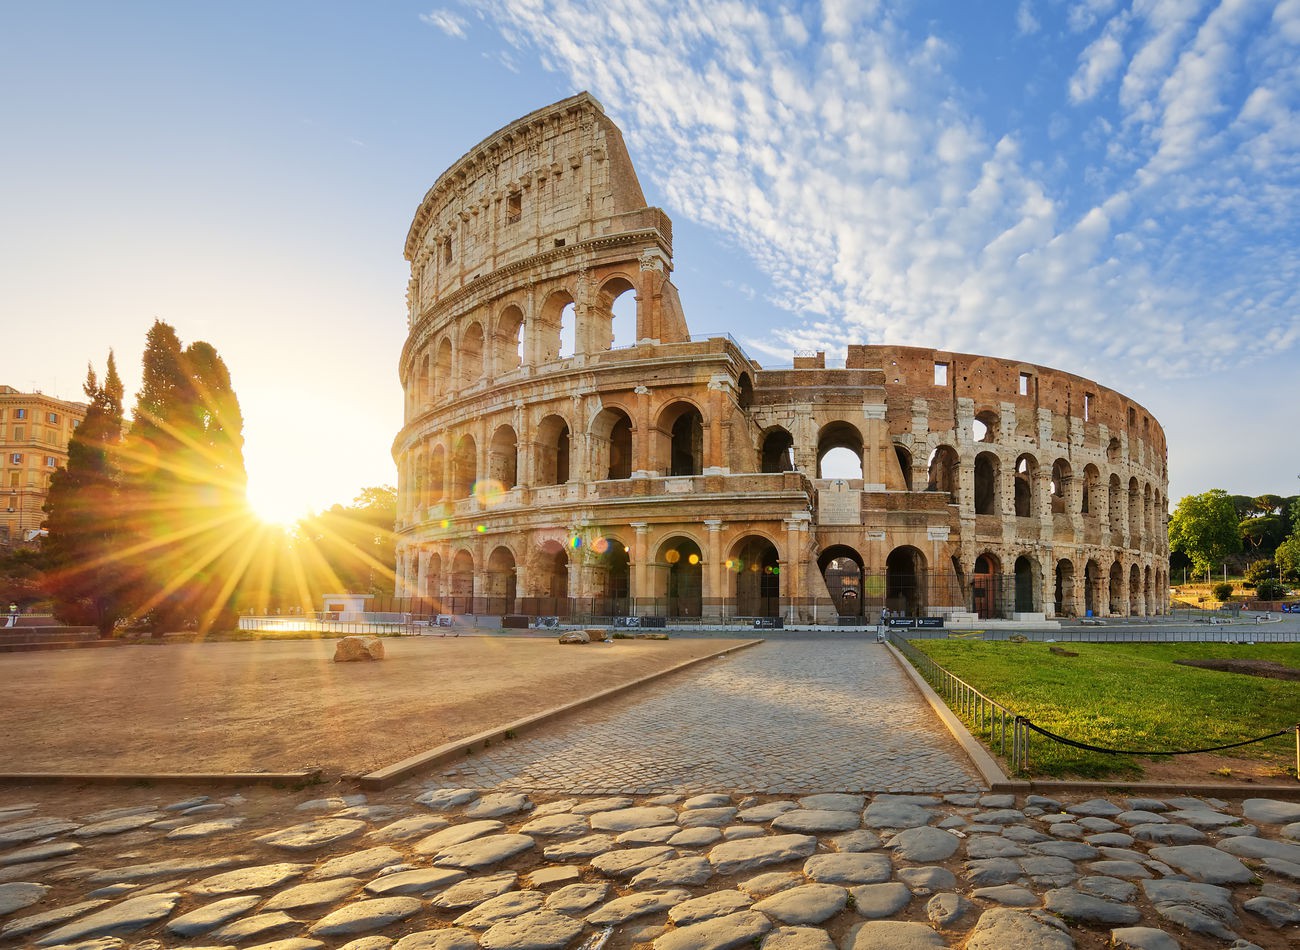 (İtalya / 52,4 milyon ziyaretçi) Akdeniz kıyı şeridinde bulunan İtalya, Avrupa’daki en güzel manzaralardan bazılarını ziyaretçilerine sunuyor. Roma’daki Kolezyum ve Venedikteki kanallar, milyonlarca insanın gelme sebeplerinden sadece iki tanesi. Avrupa’daki en büyük aktif yanardağ, sayısız tarihi yer ve anıt, nefes kesen plajlar ve muhteşem lezzetler. Dünyada en fazla UNESCO Dünya Mirası Alanları olan ülke İtalya, gelenlere unutulmaz bir tatil vadediyor. İtalya’da en çok ziyaret edilen yerler arasında Kolezyum, Venedik’teki Büyük Kanal, Floransa Katedrali ve Pompeii sayılabilir.